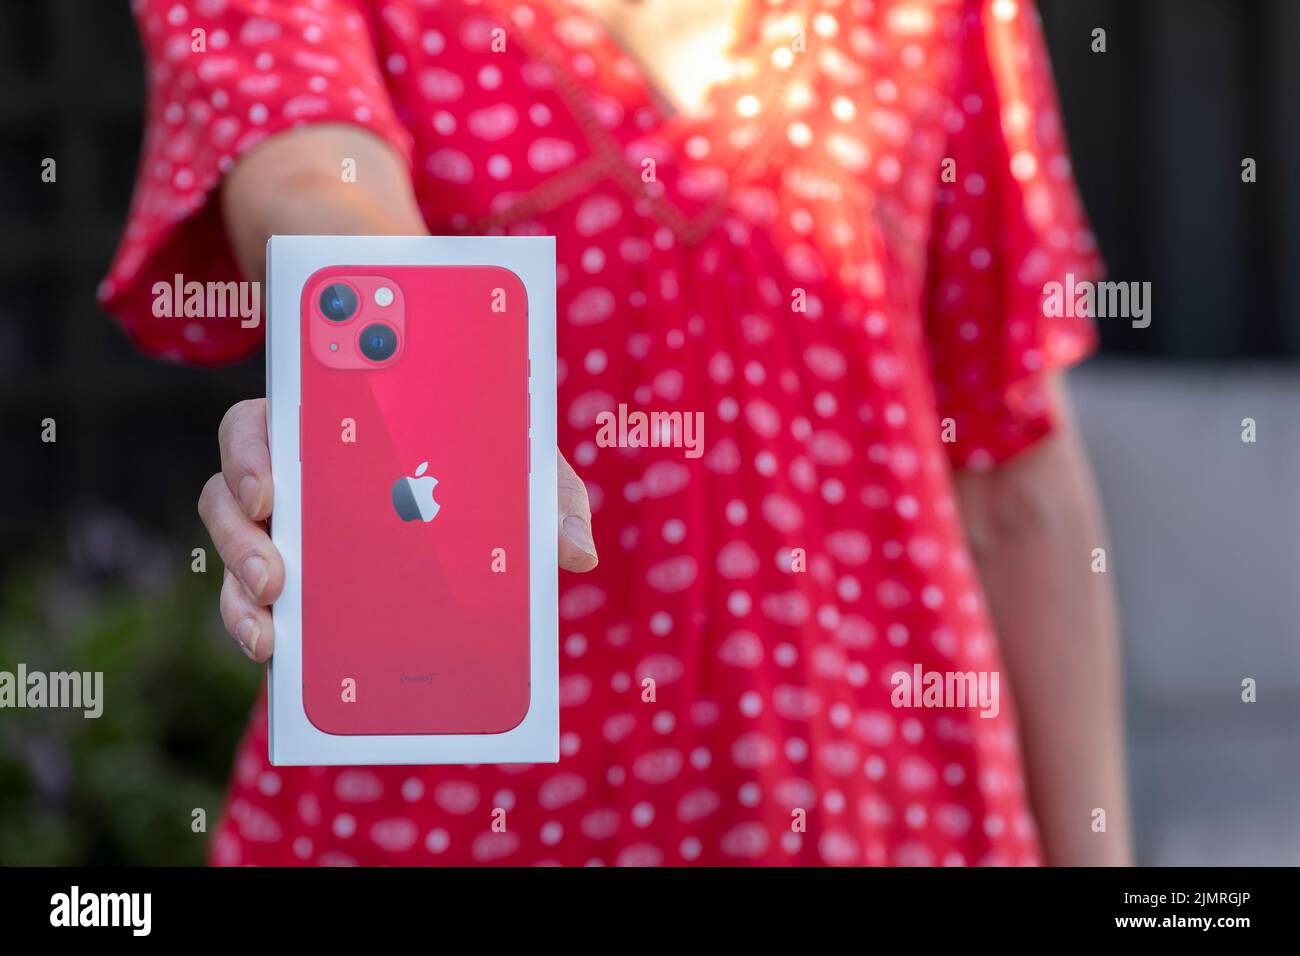 Une femme, une femme d'âge moyen tenant une nouvelle boîte Apple iPhone 13 avec son nouvel iPhone acheté à l'intérieur de la boîte. Il s'agit d'un modèle rouge, comme illustré sur l'image Banque D'Images